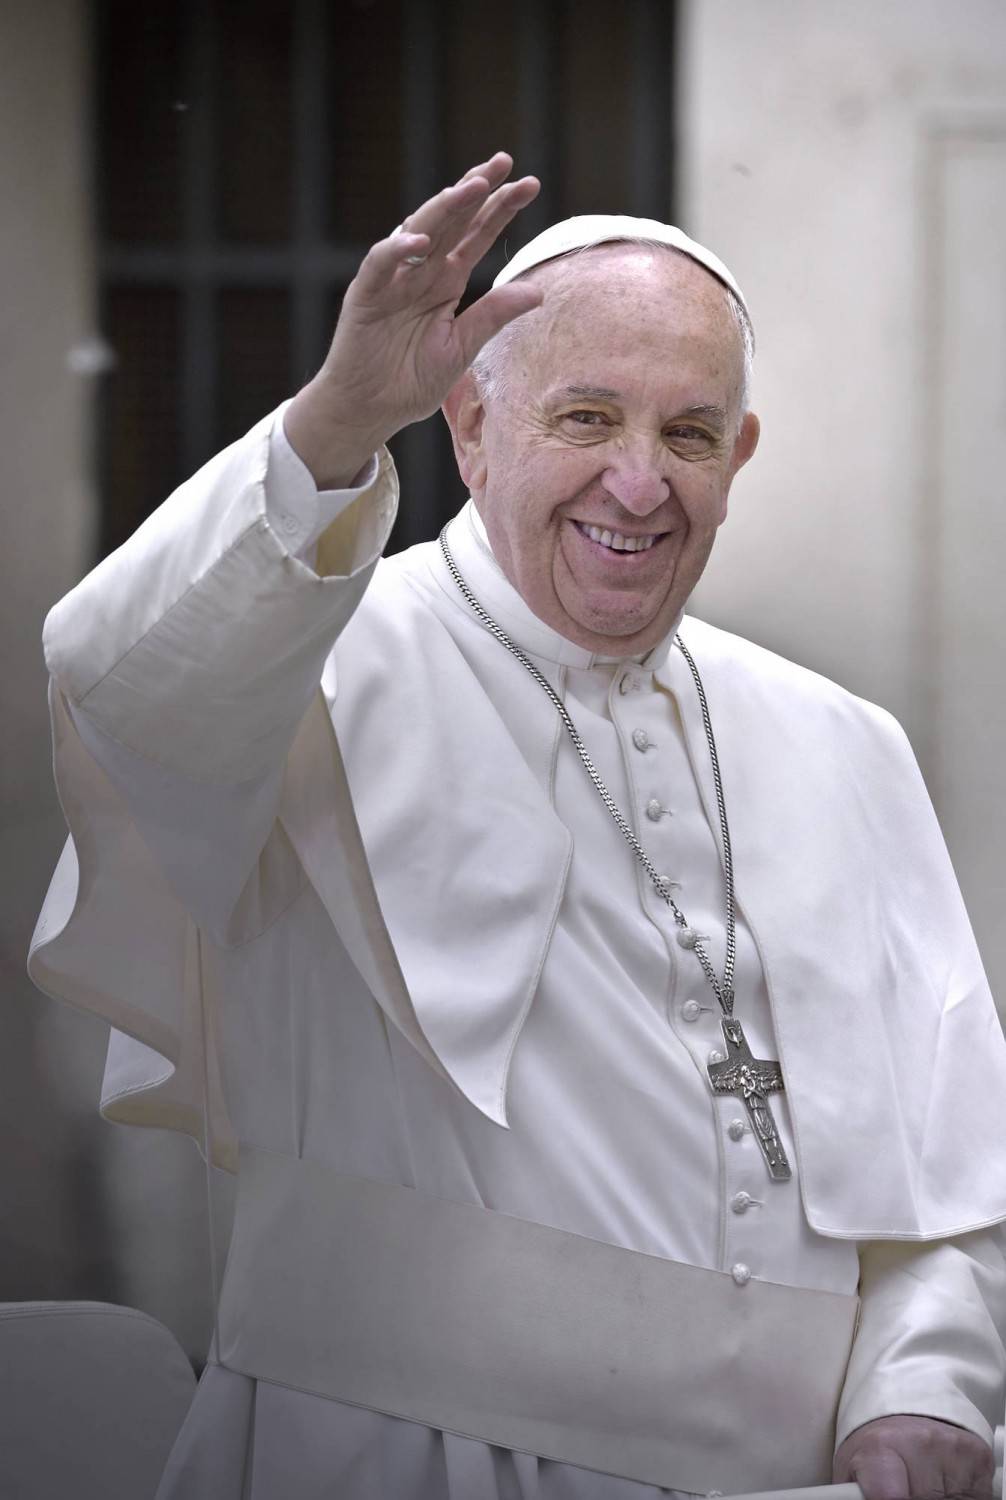 La Chiesa che non ci sta Stupore e perplessità sull'apertura del Papa